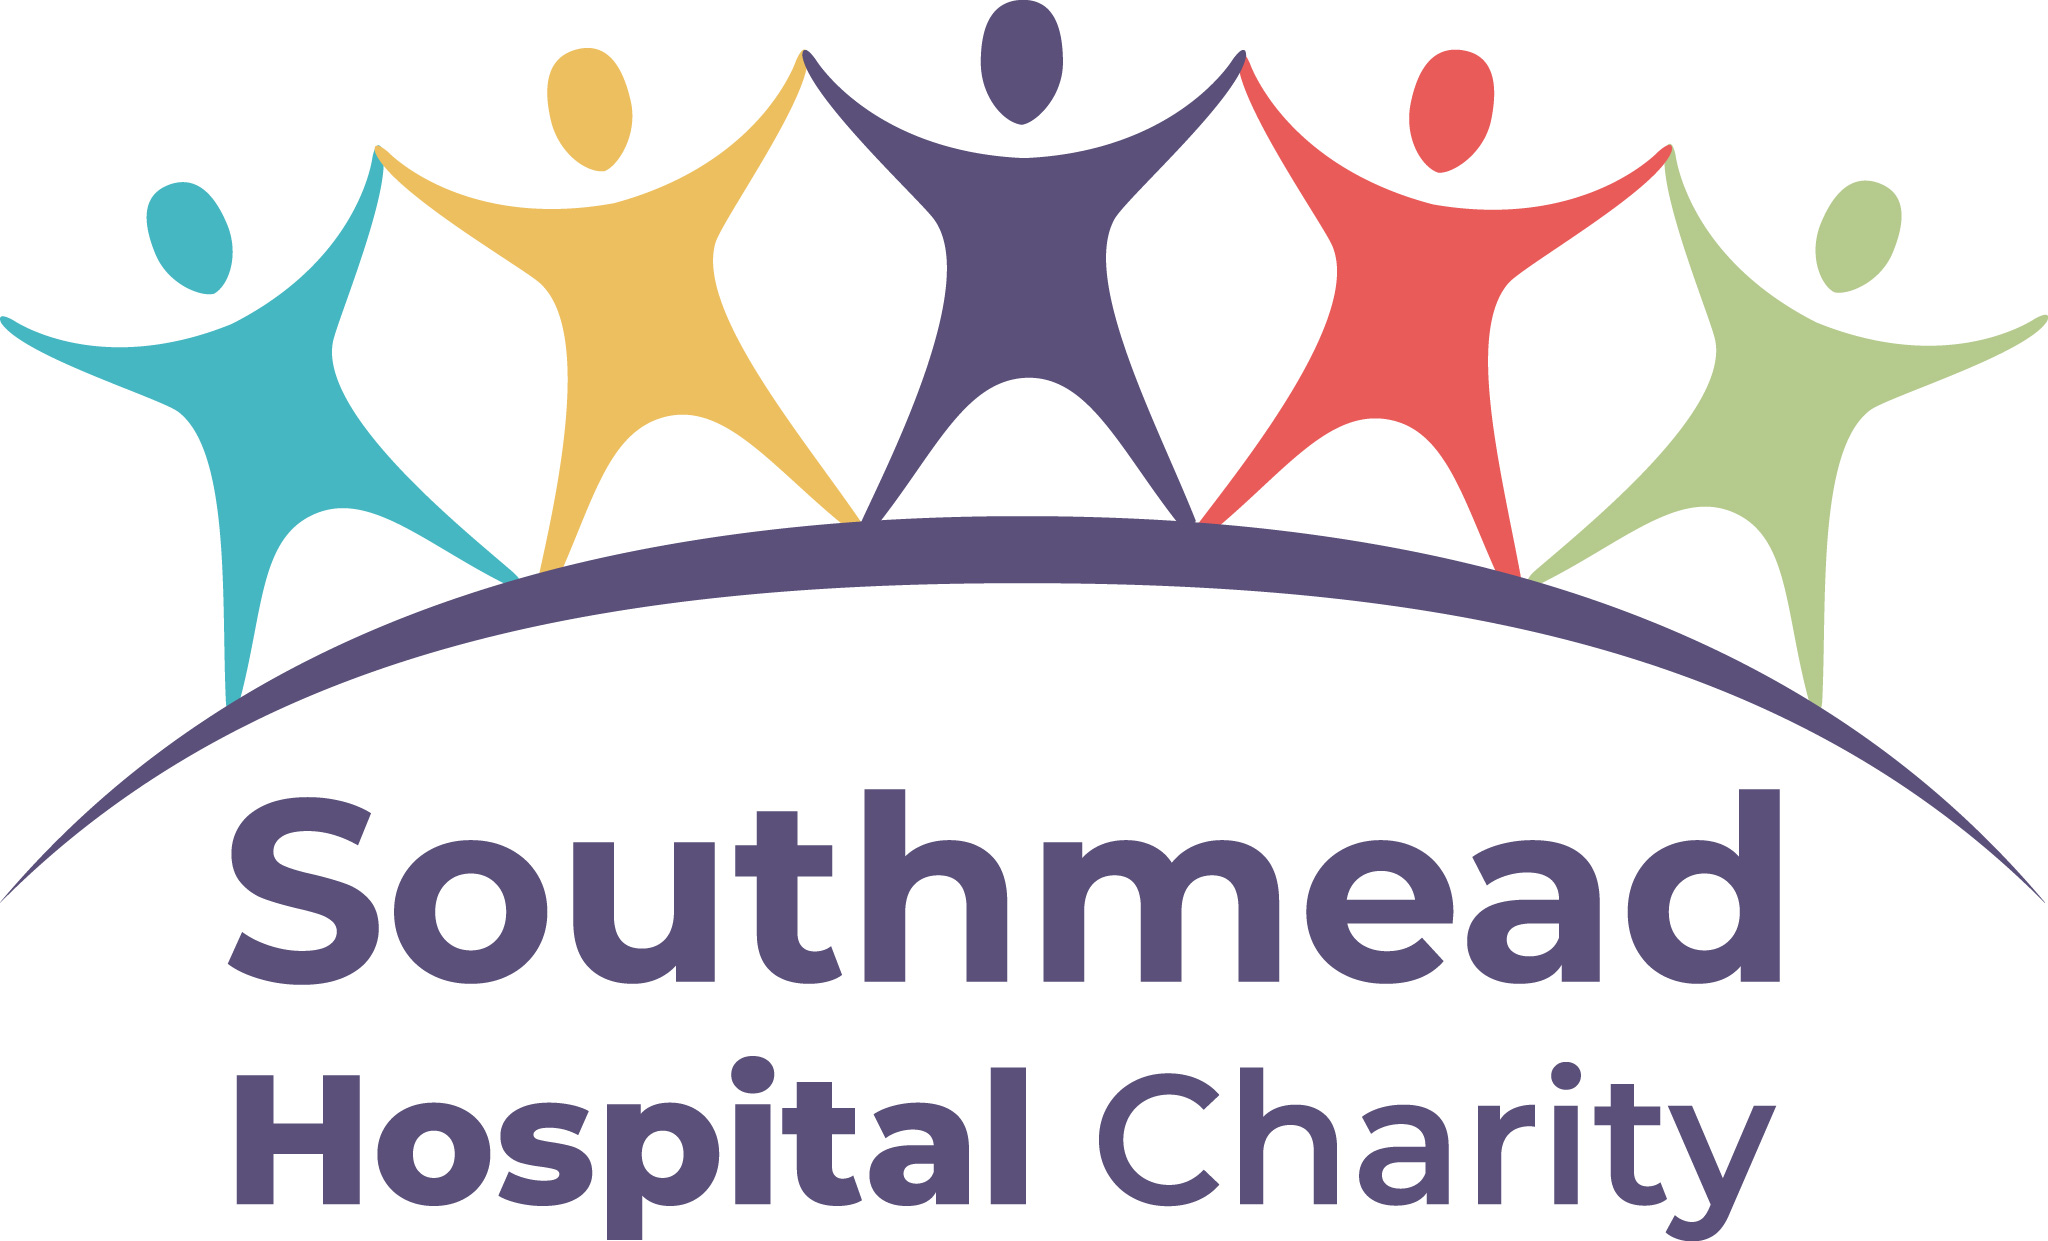 Southmead hospital charity